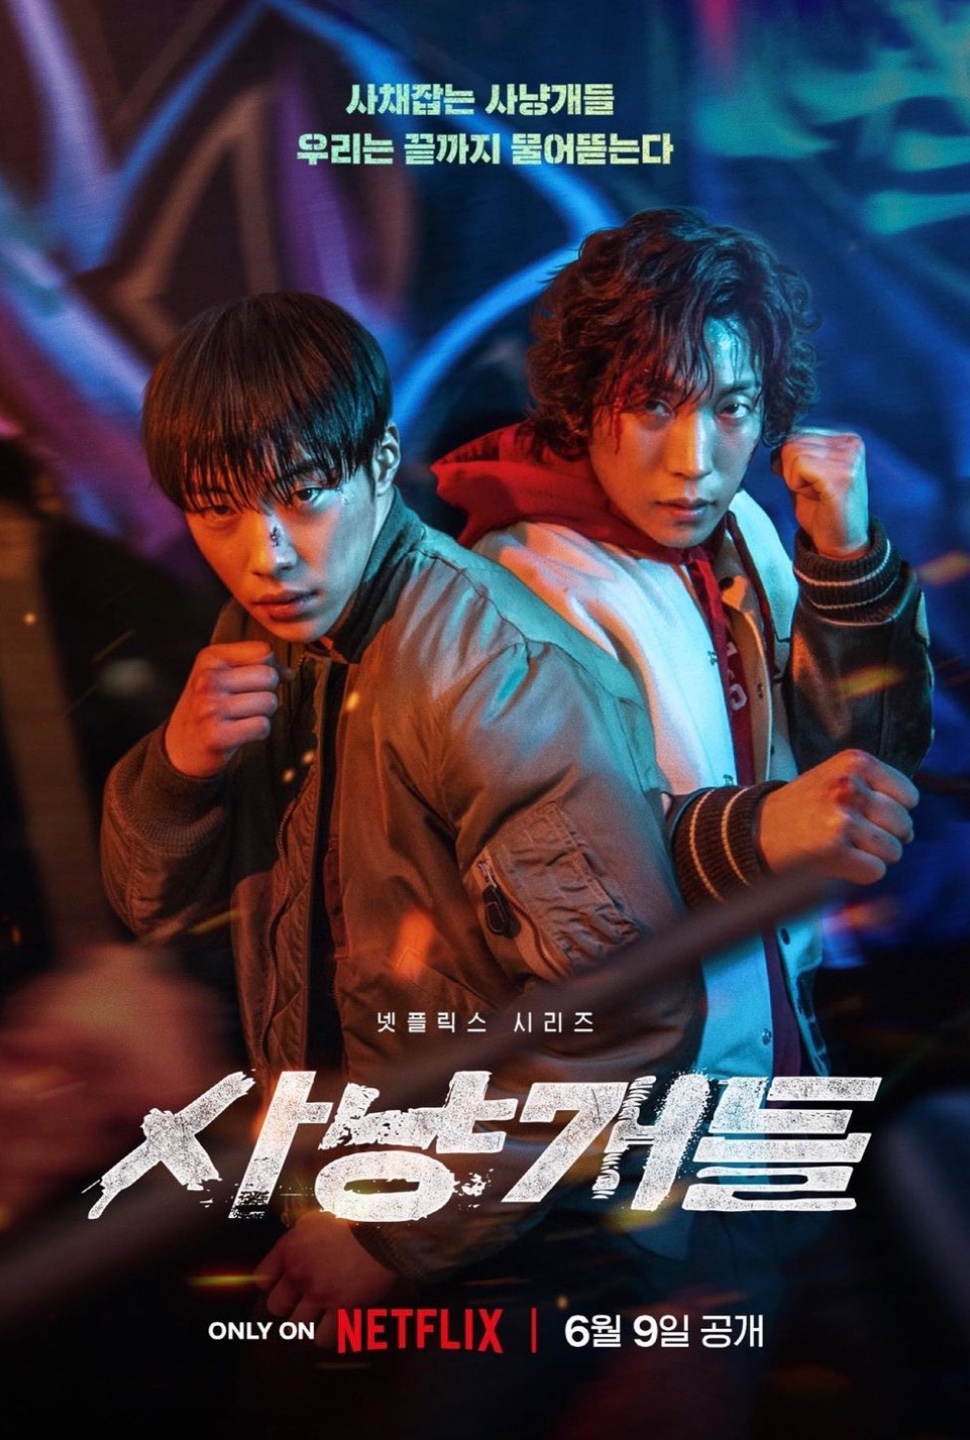 웹툰 '사냥개들' Netflix 드라마 2023.06.09 전세계 공개